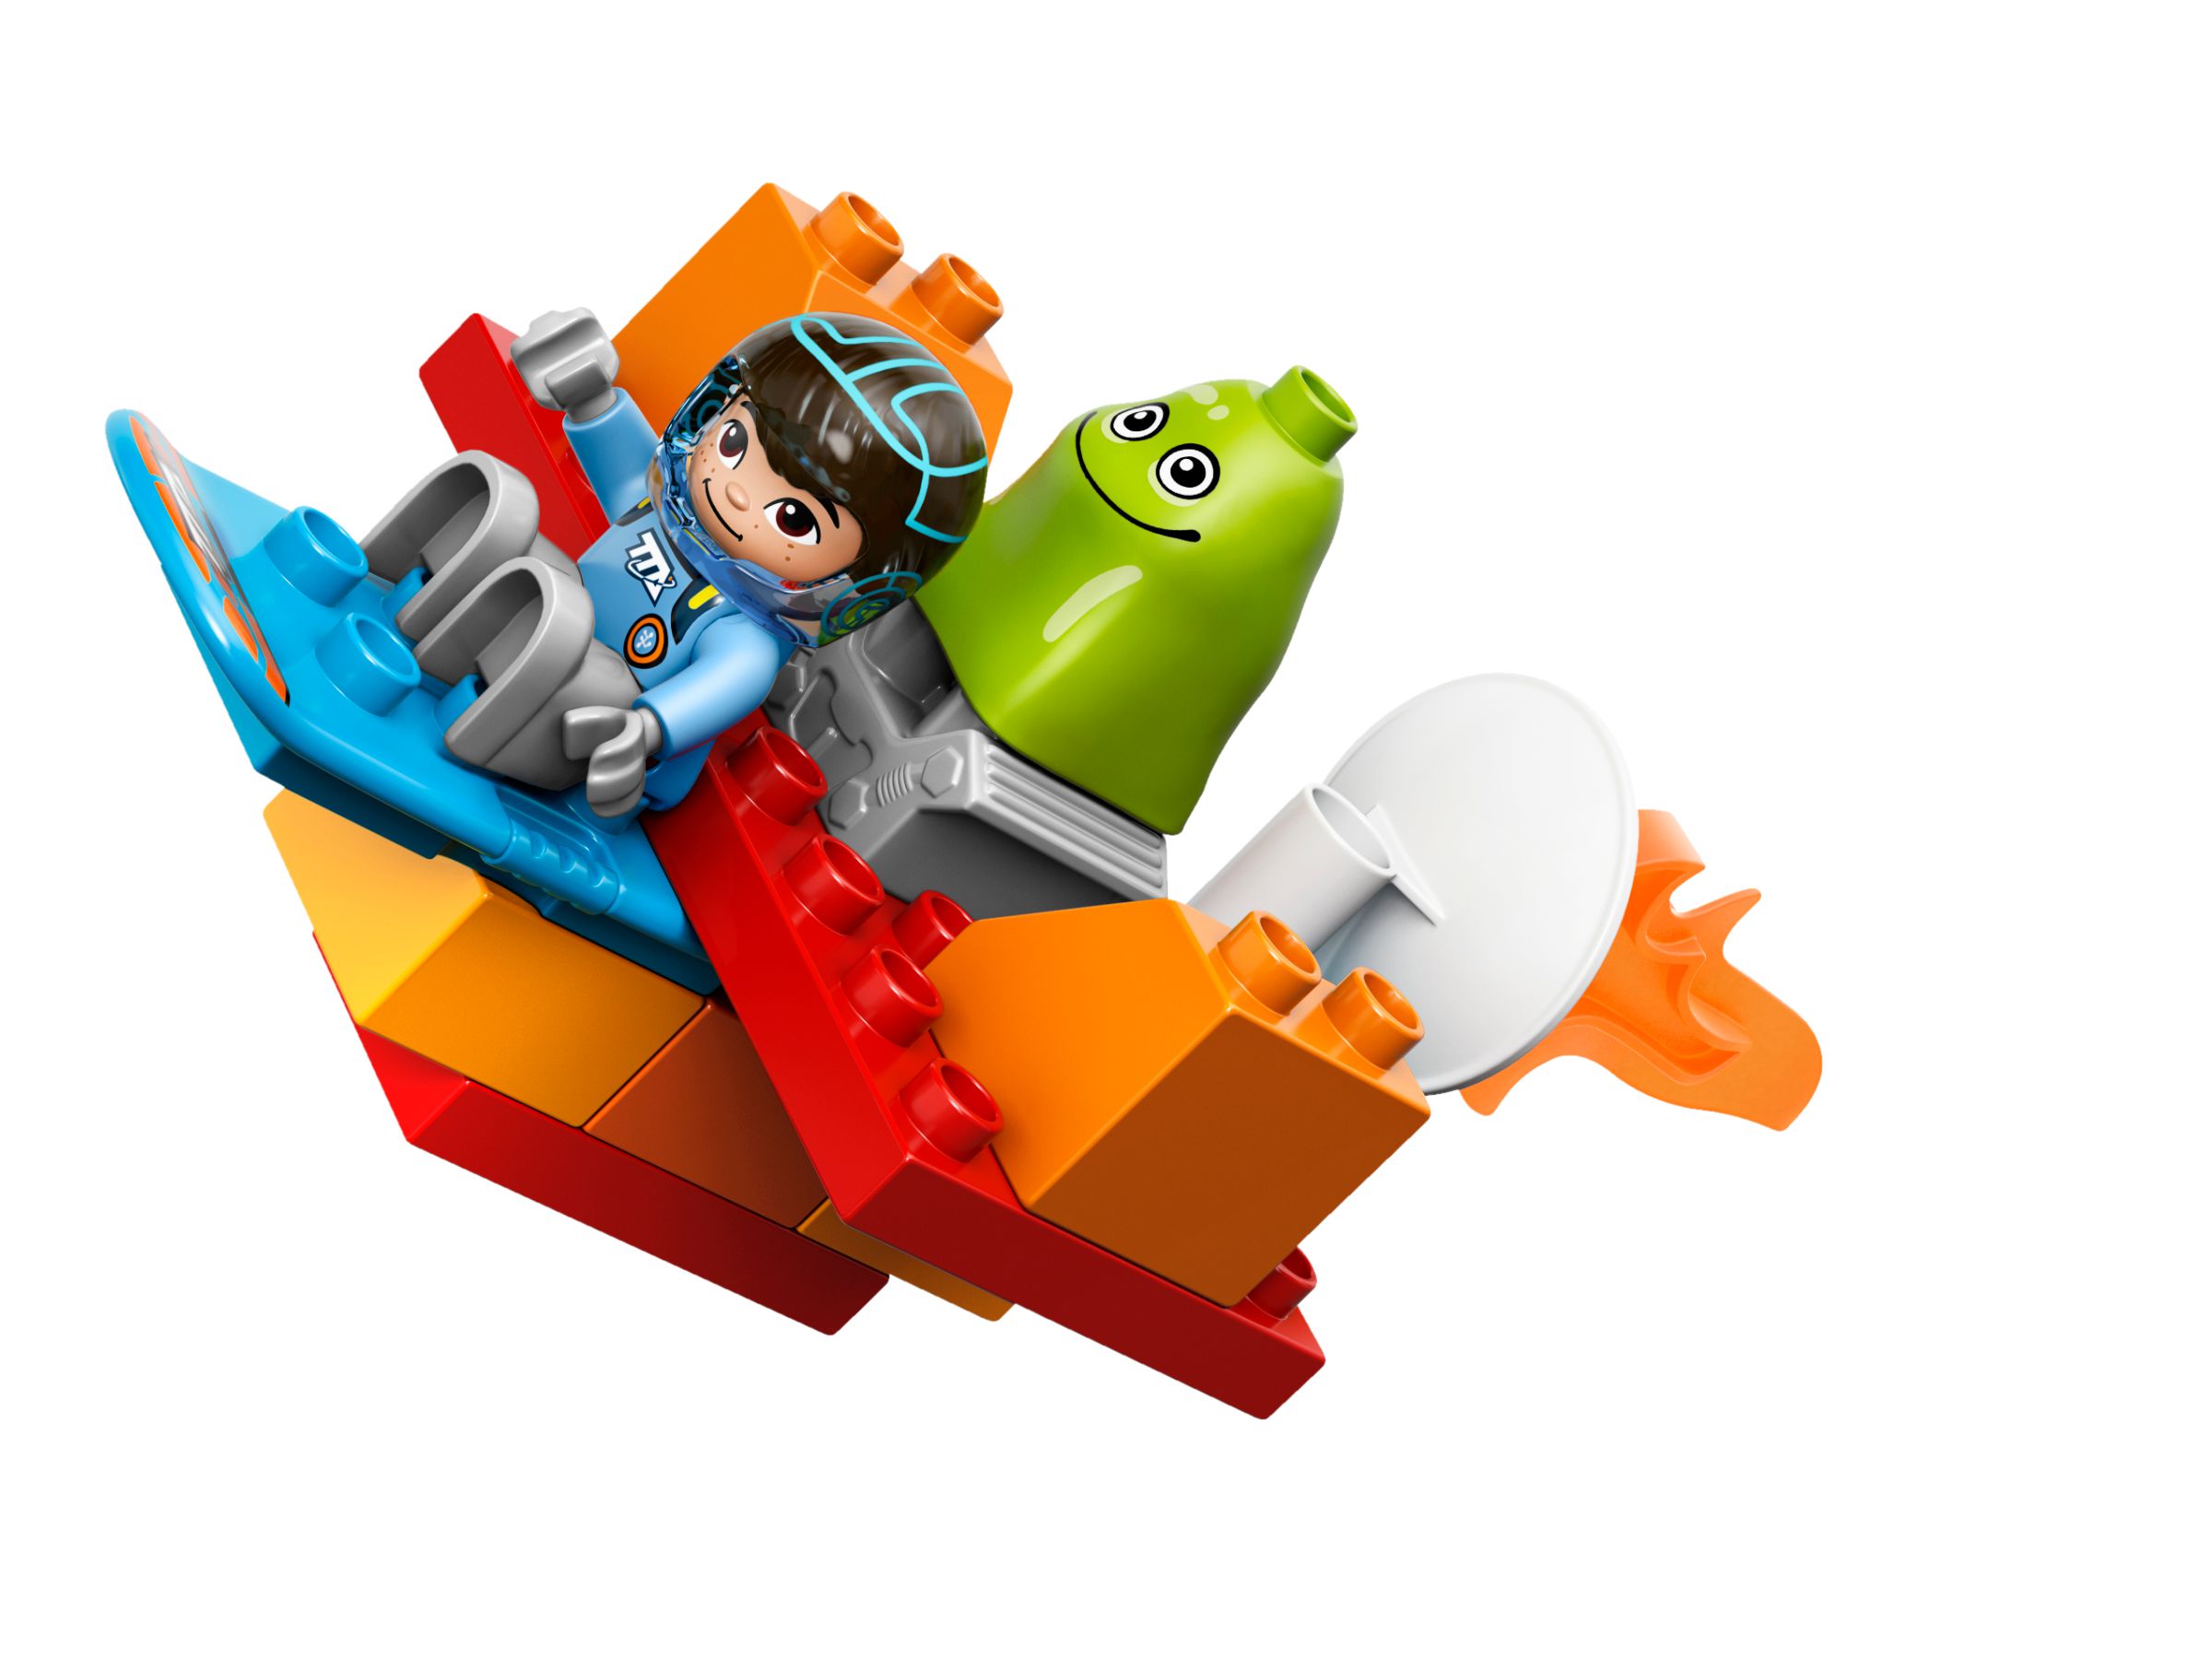 LEGO Duplo 10824 Miles Weltraumabenteuer LEGO_10824_alt3.jpg